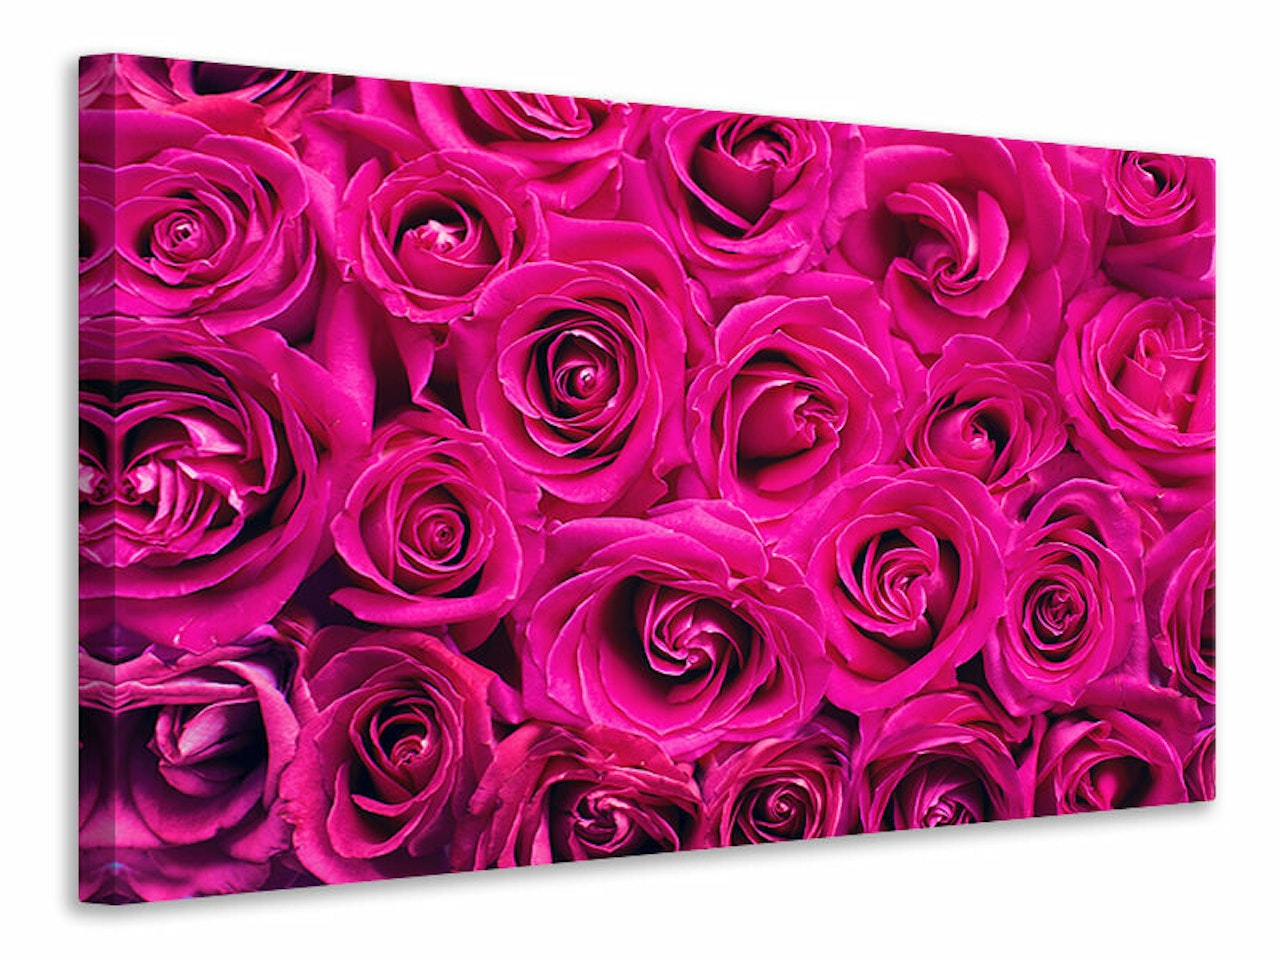 Ljuddämpande tavla - rose petals in pink